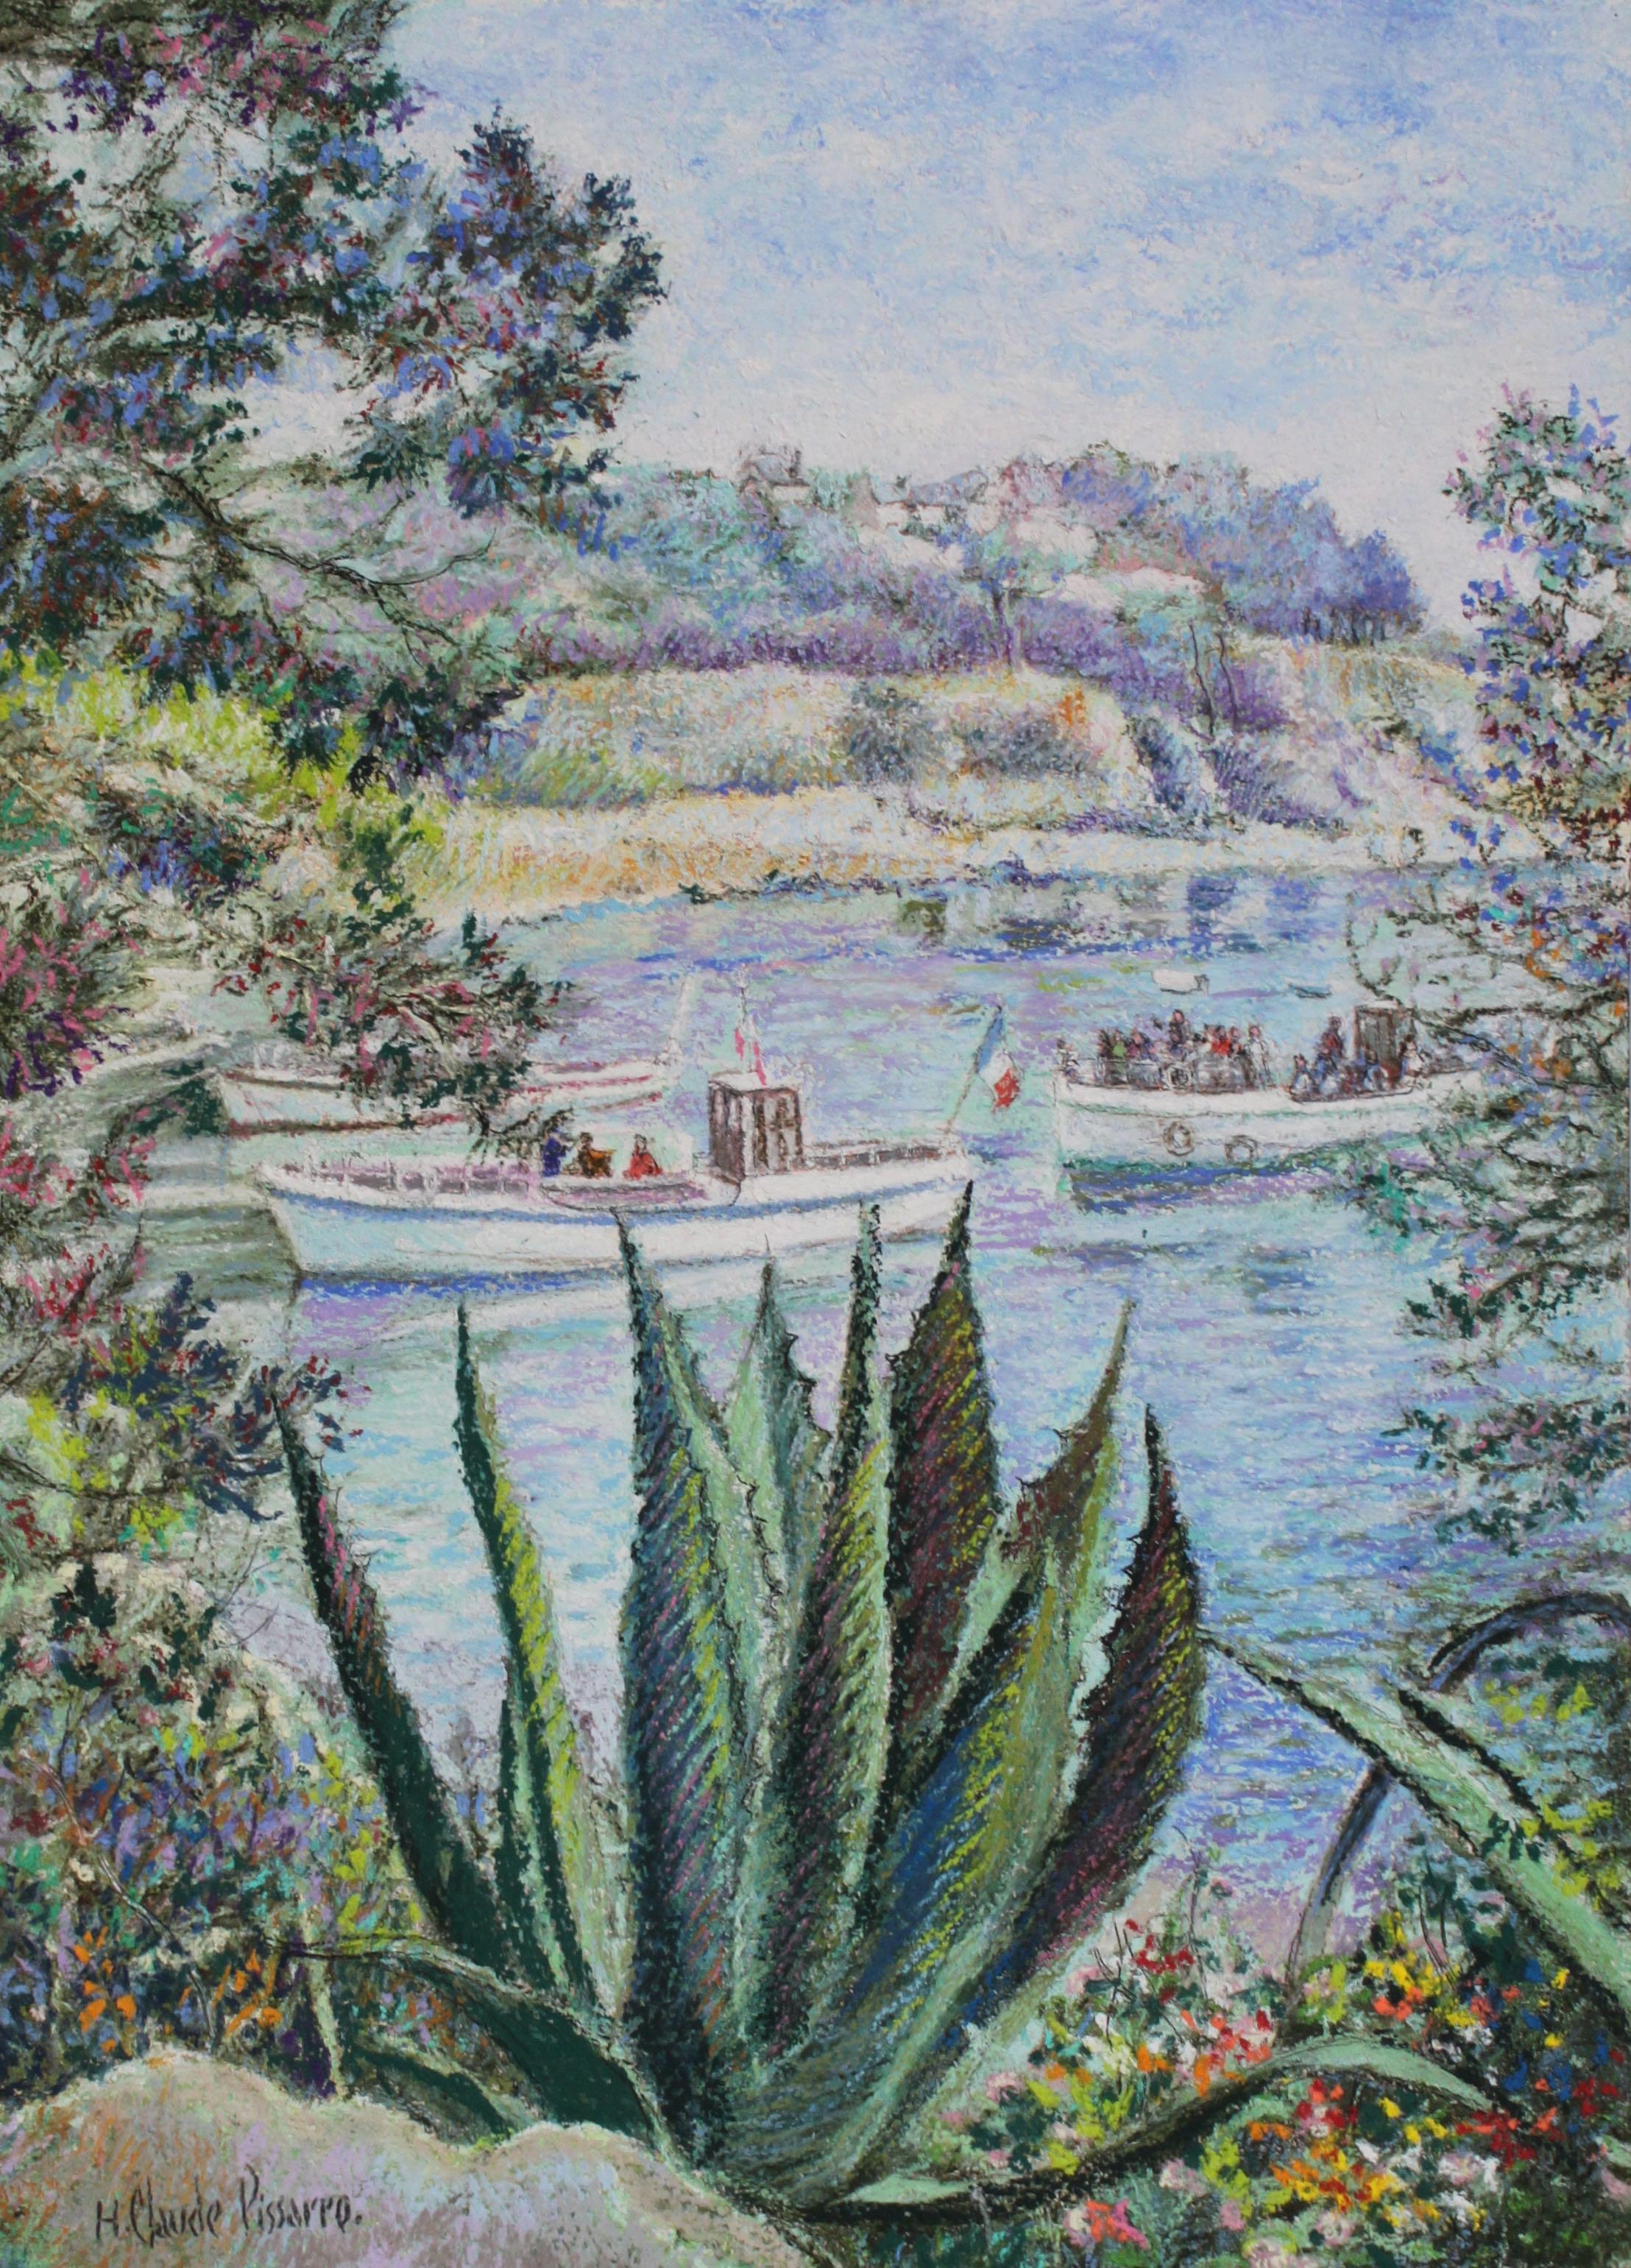 Hughes Claude Pissarro Landscape Art - L'Aloés de la Calanque - Bréhat by H. Claude Pissarro - Landscape painting